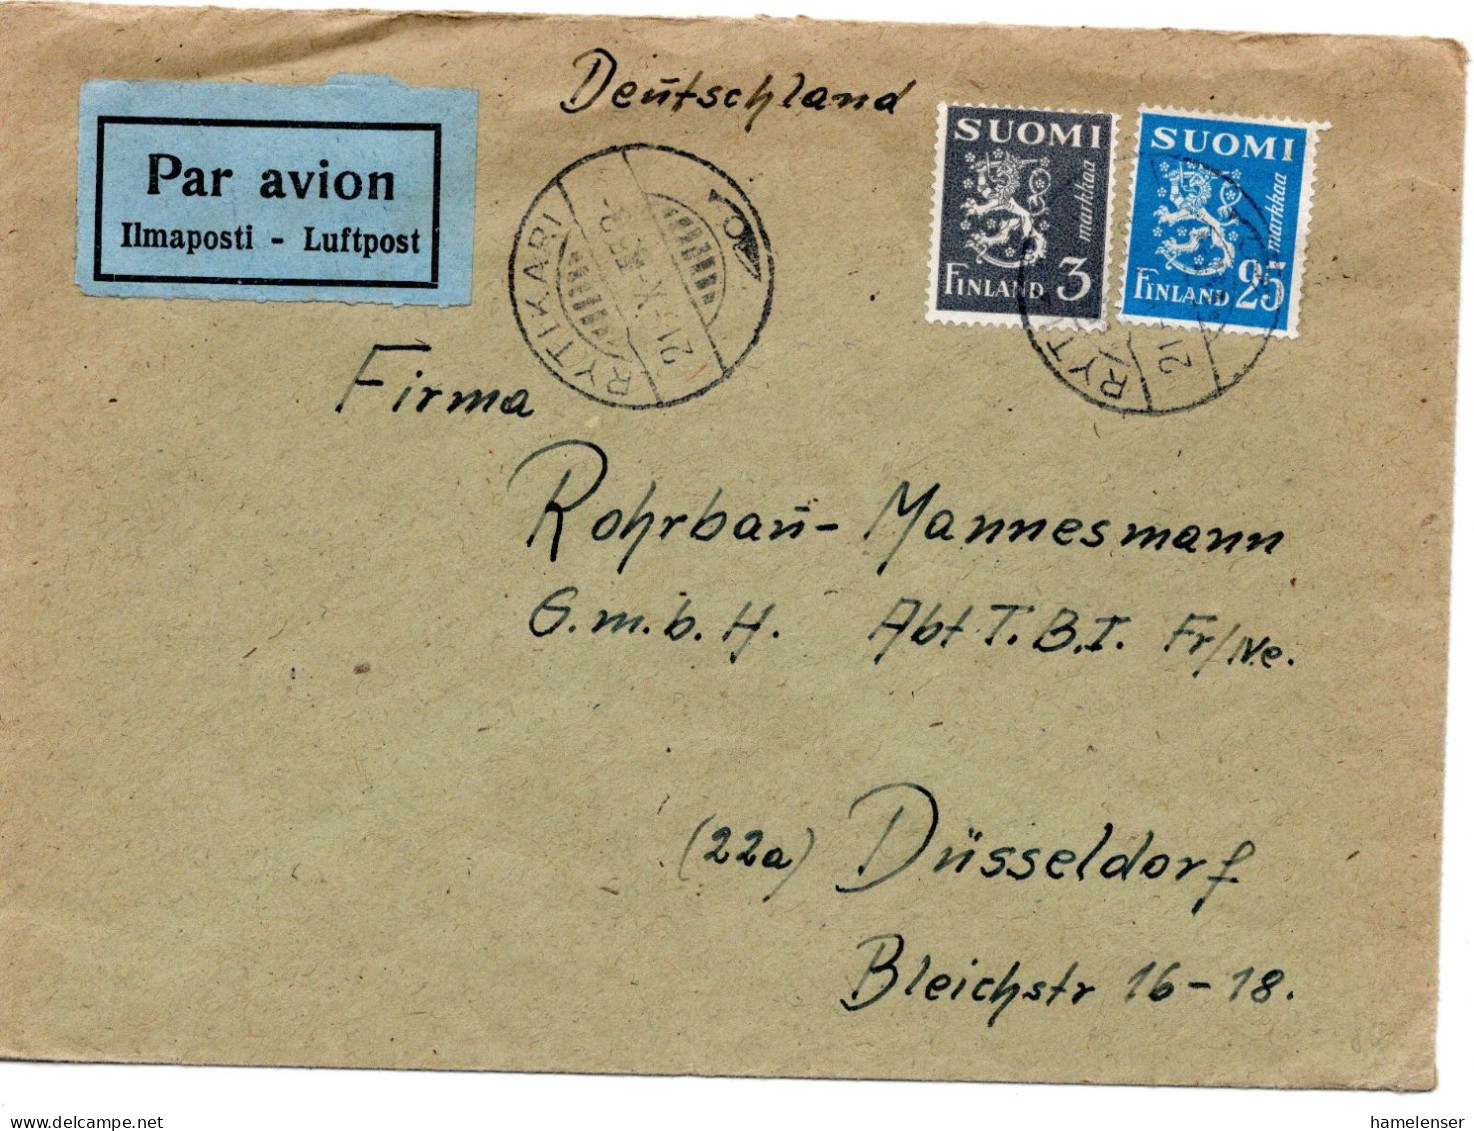 64615 - Finnland - 1953 - 25Mk Wappenloewe MiF A LpBf RYTIKARI -> Westdeutschland - Storia Postale